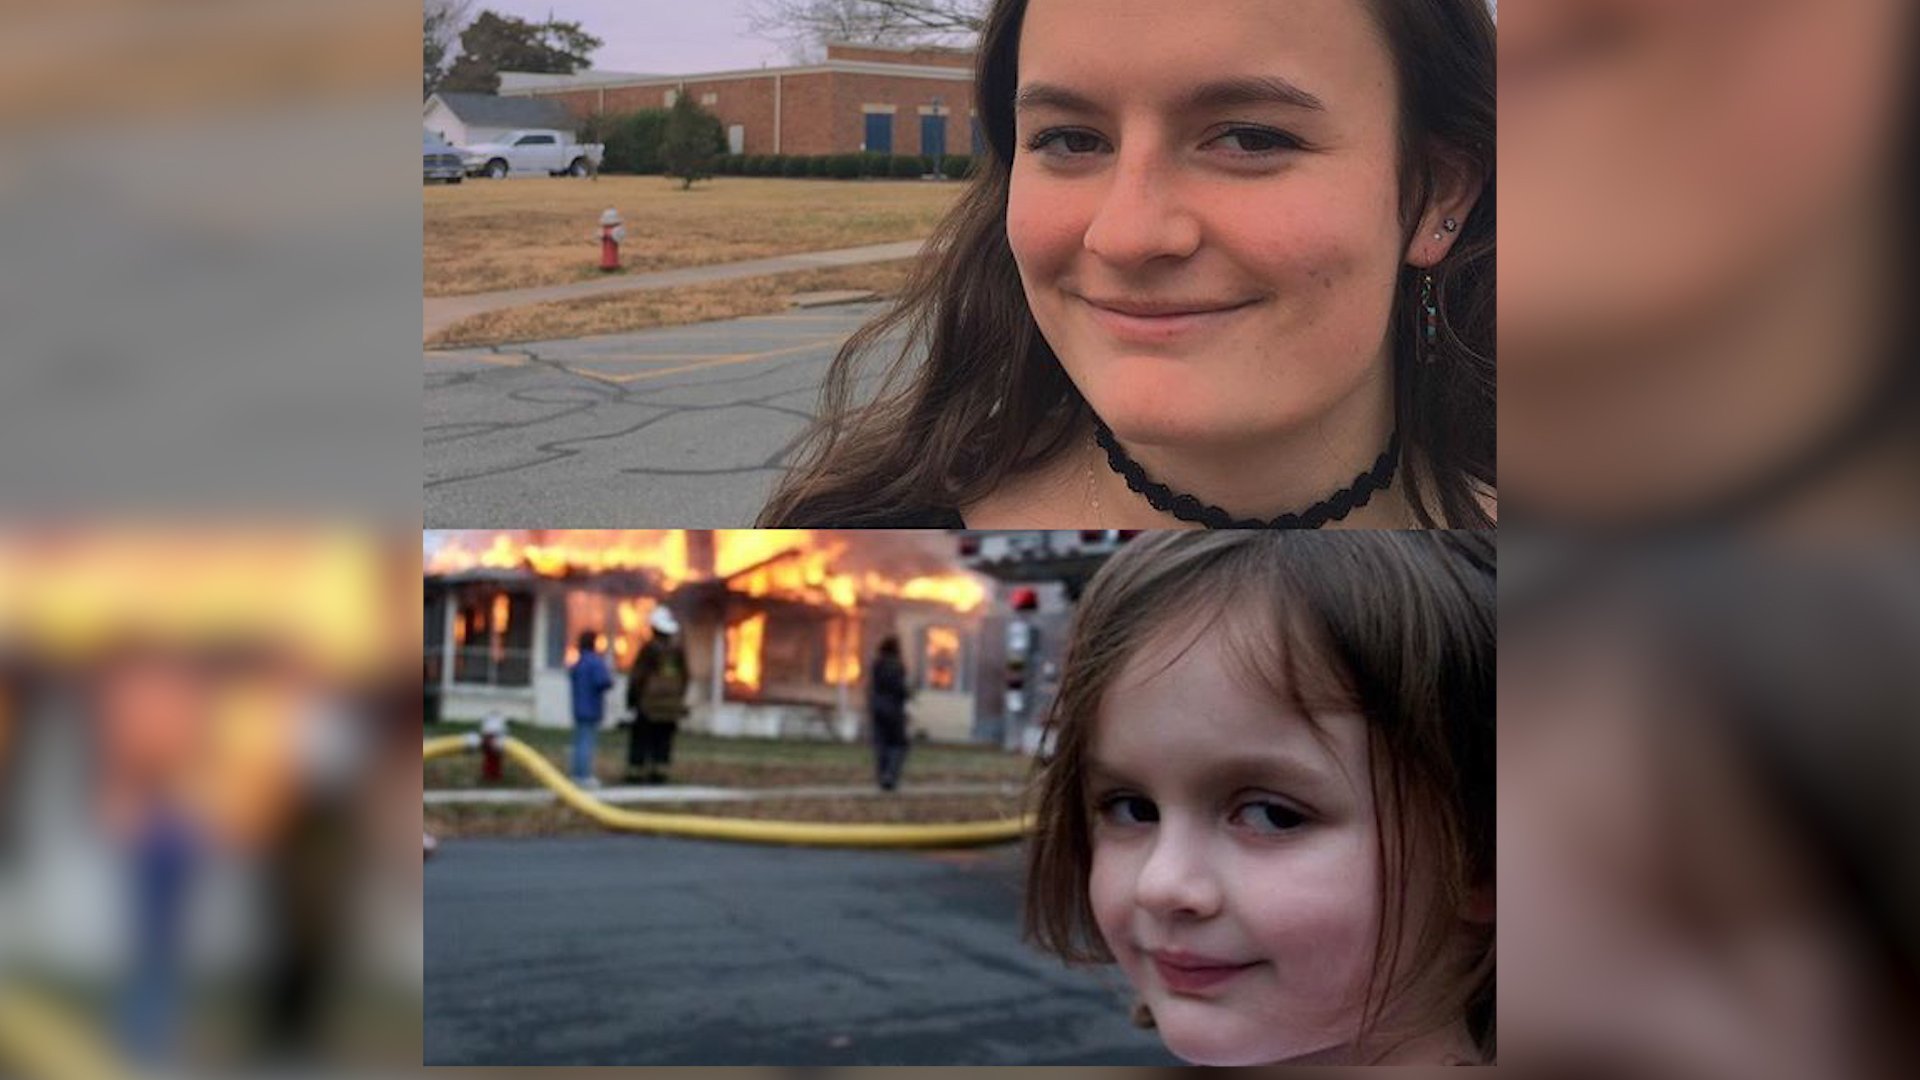 Мем где девочка на фоне горящего дома